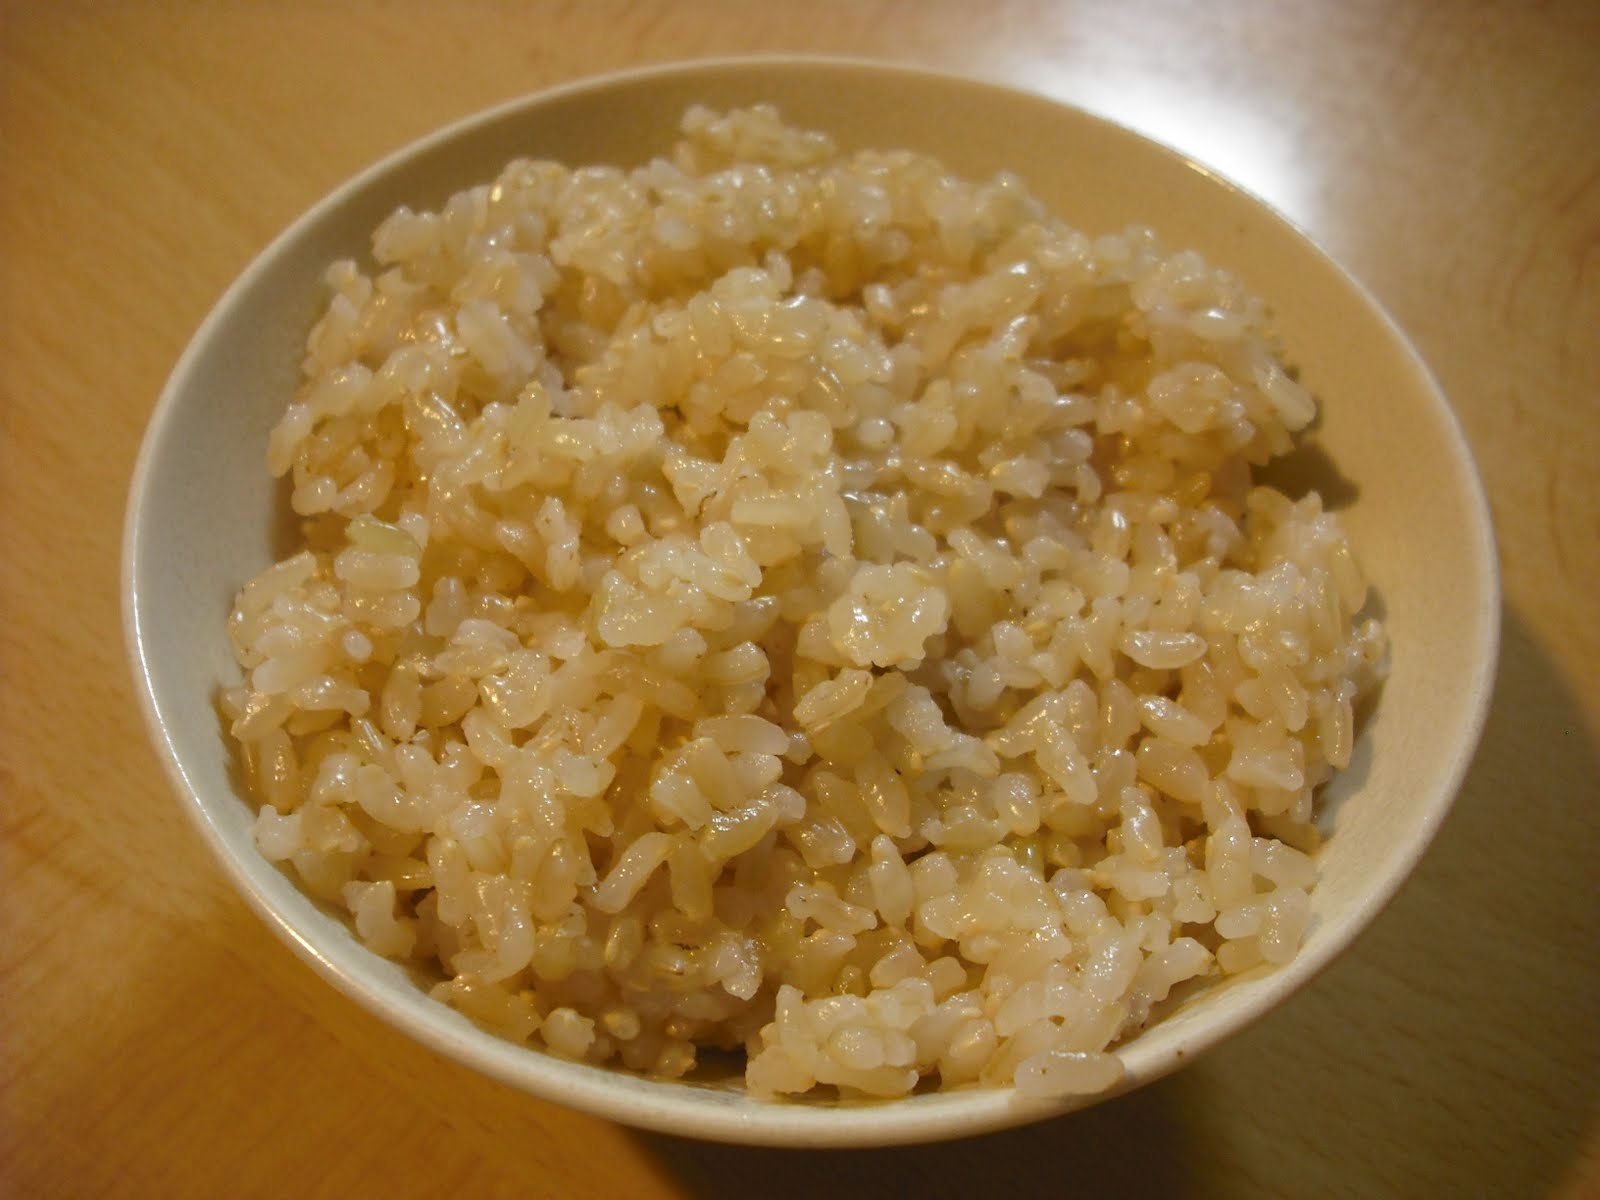 Hiroyuki S Blog On Japanese Cooking Making Hatsuga Genmai Germinated Brown Rice 発芽玄米を作る